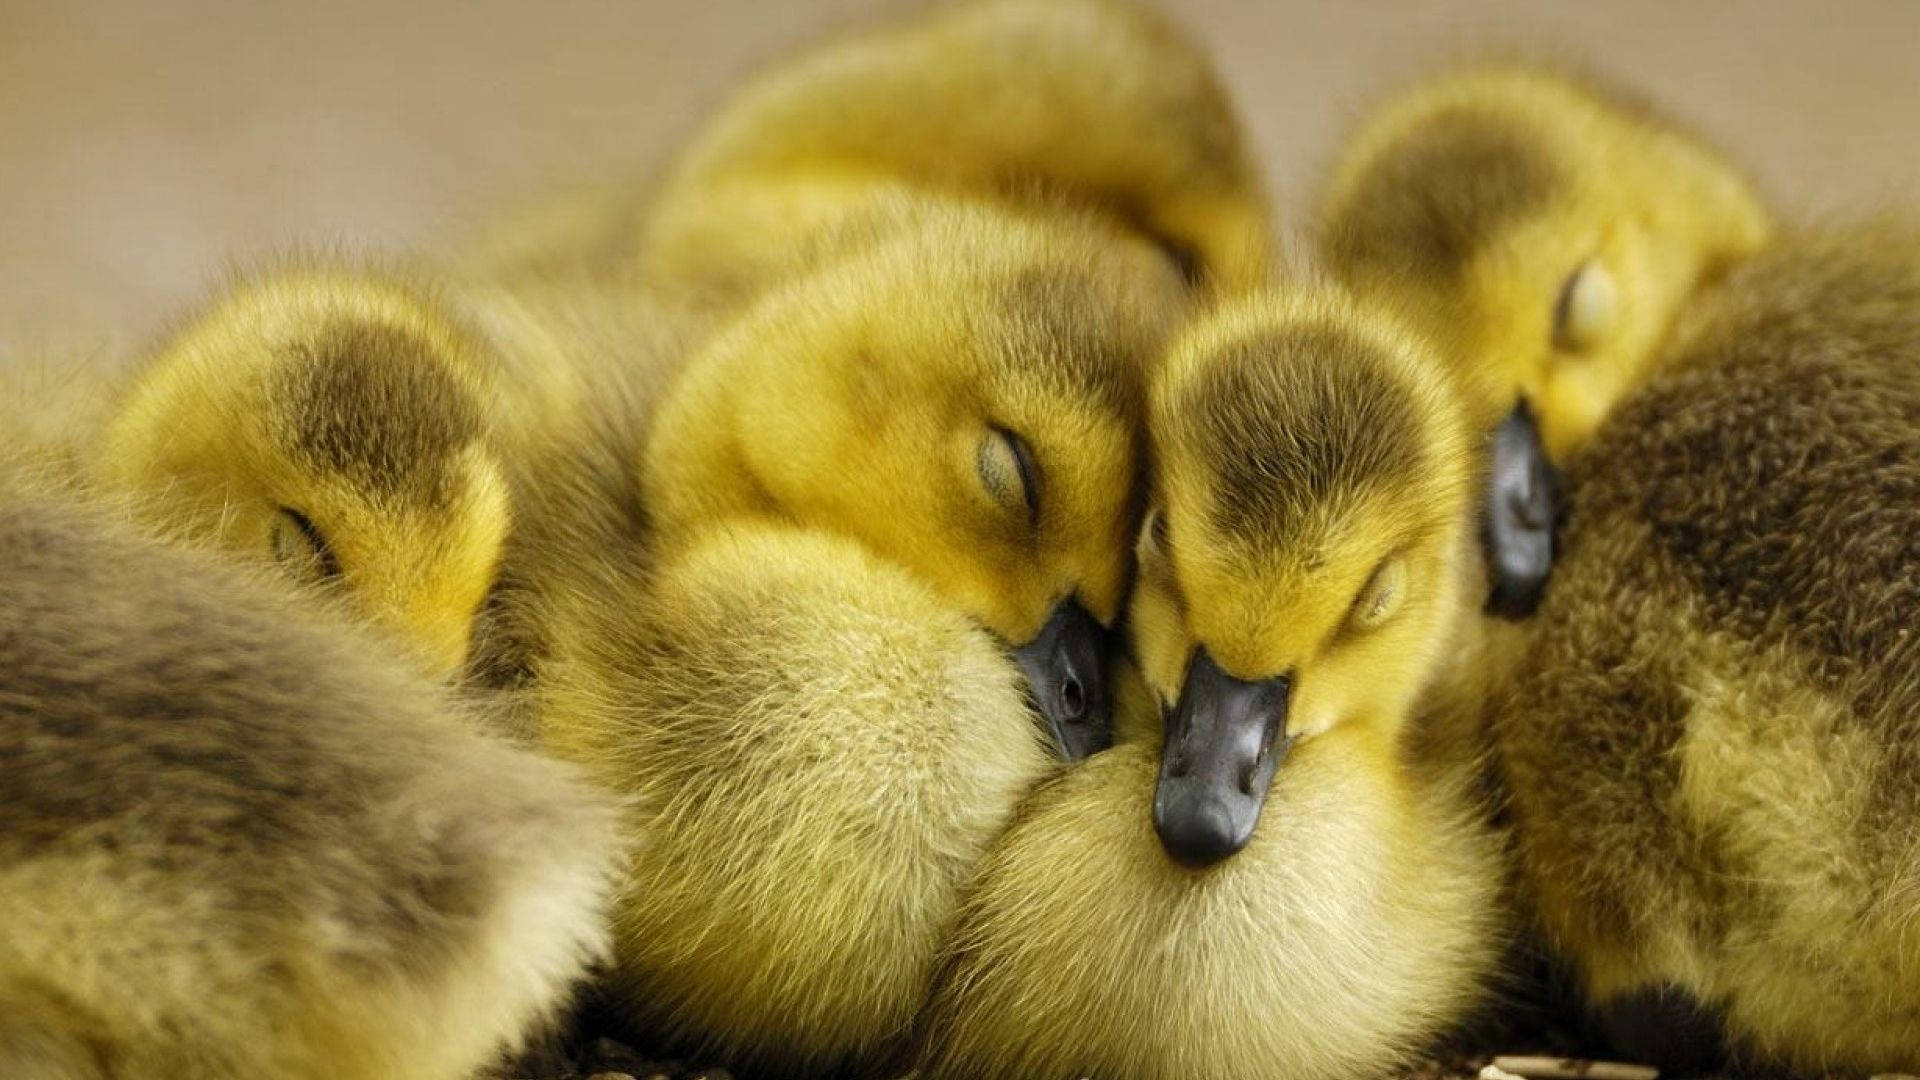 Sleeping Baby Ducks Background